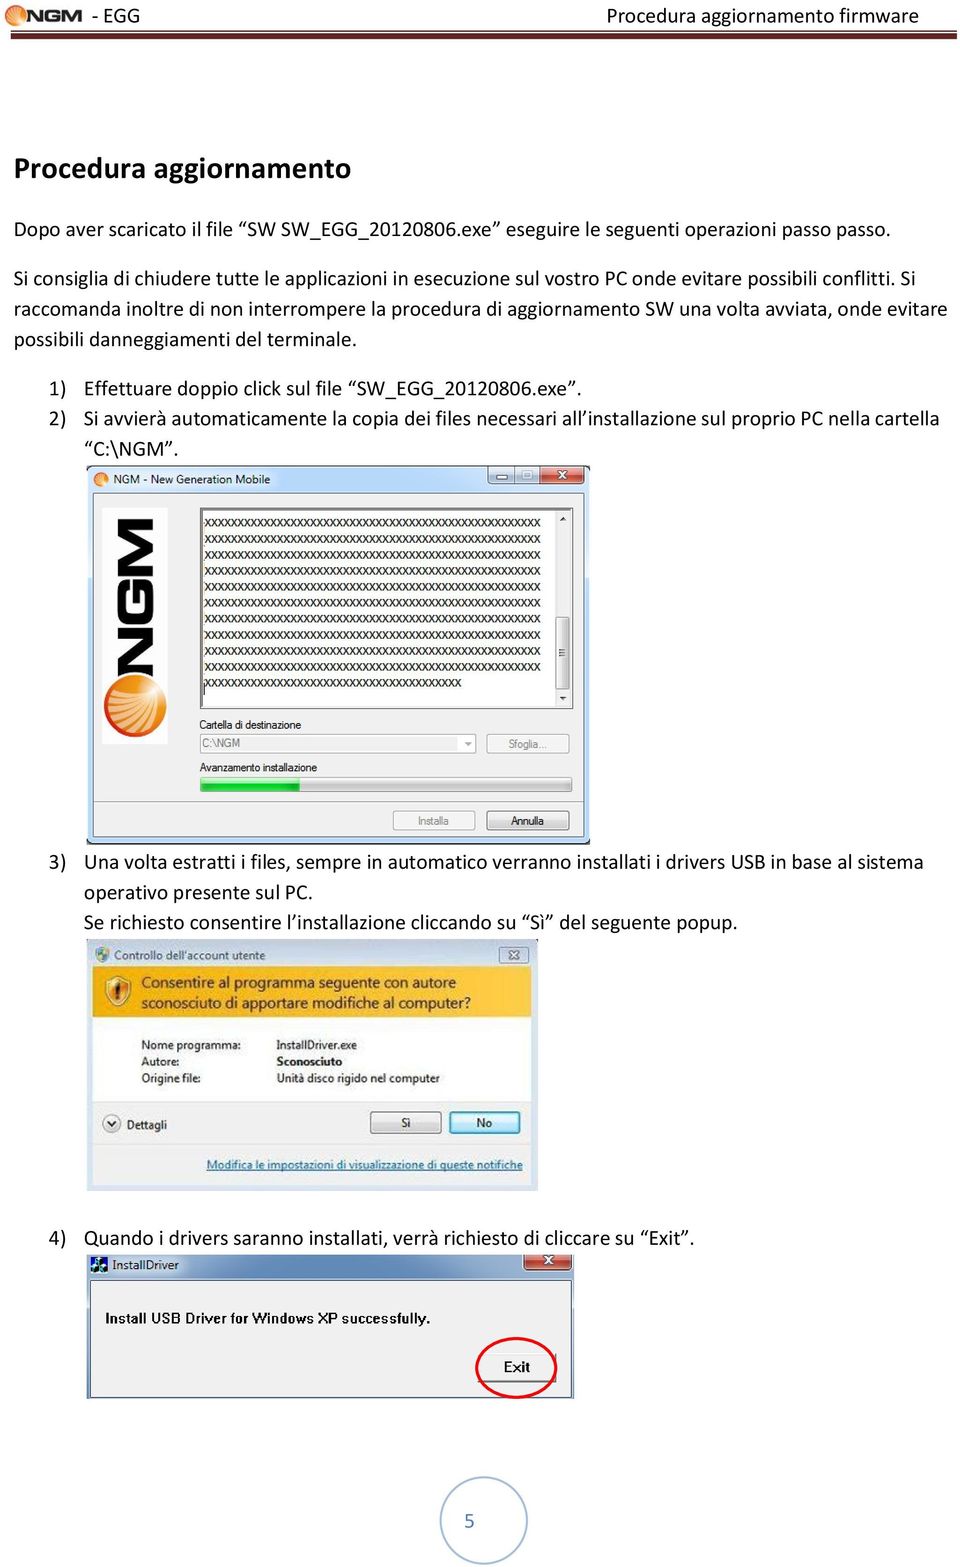 Si raccomanda inoltre di non interrompere la procedura di aggiornamento SW una volta avviata, onde evitare possibili danneggiamenti del terminale. 1) Effettuare doppio click sul file SW_EGG_20120806.